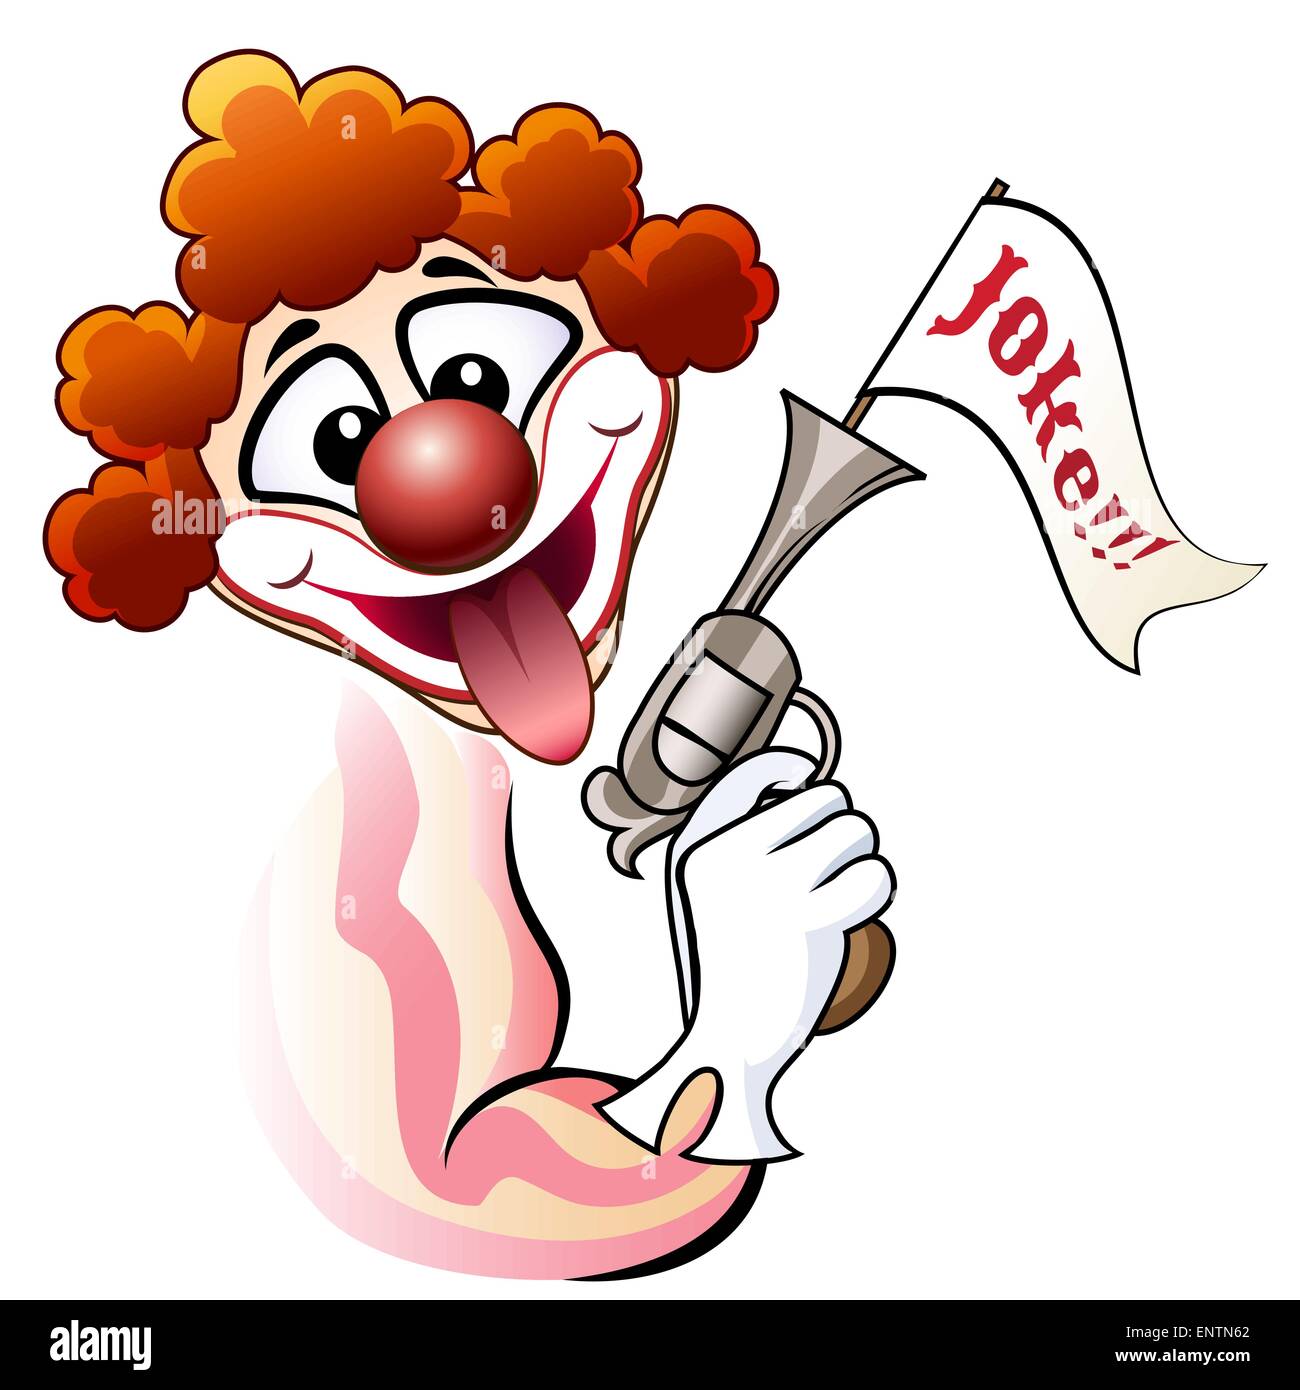 Lustige Illustration der Clown mit einem gefälschten revolver Stock Vektor